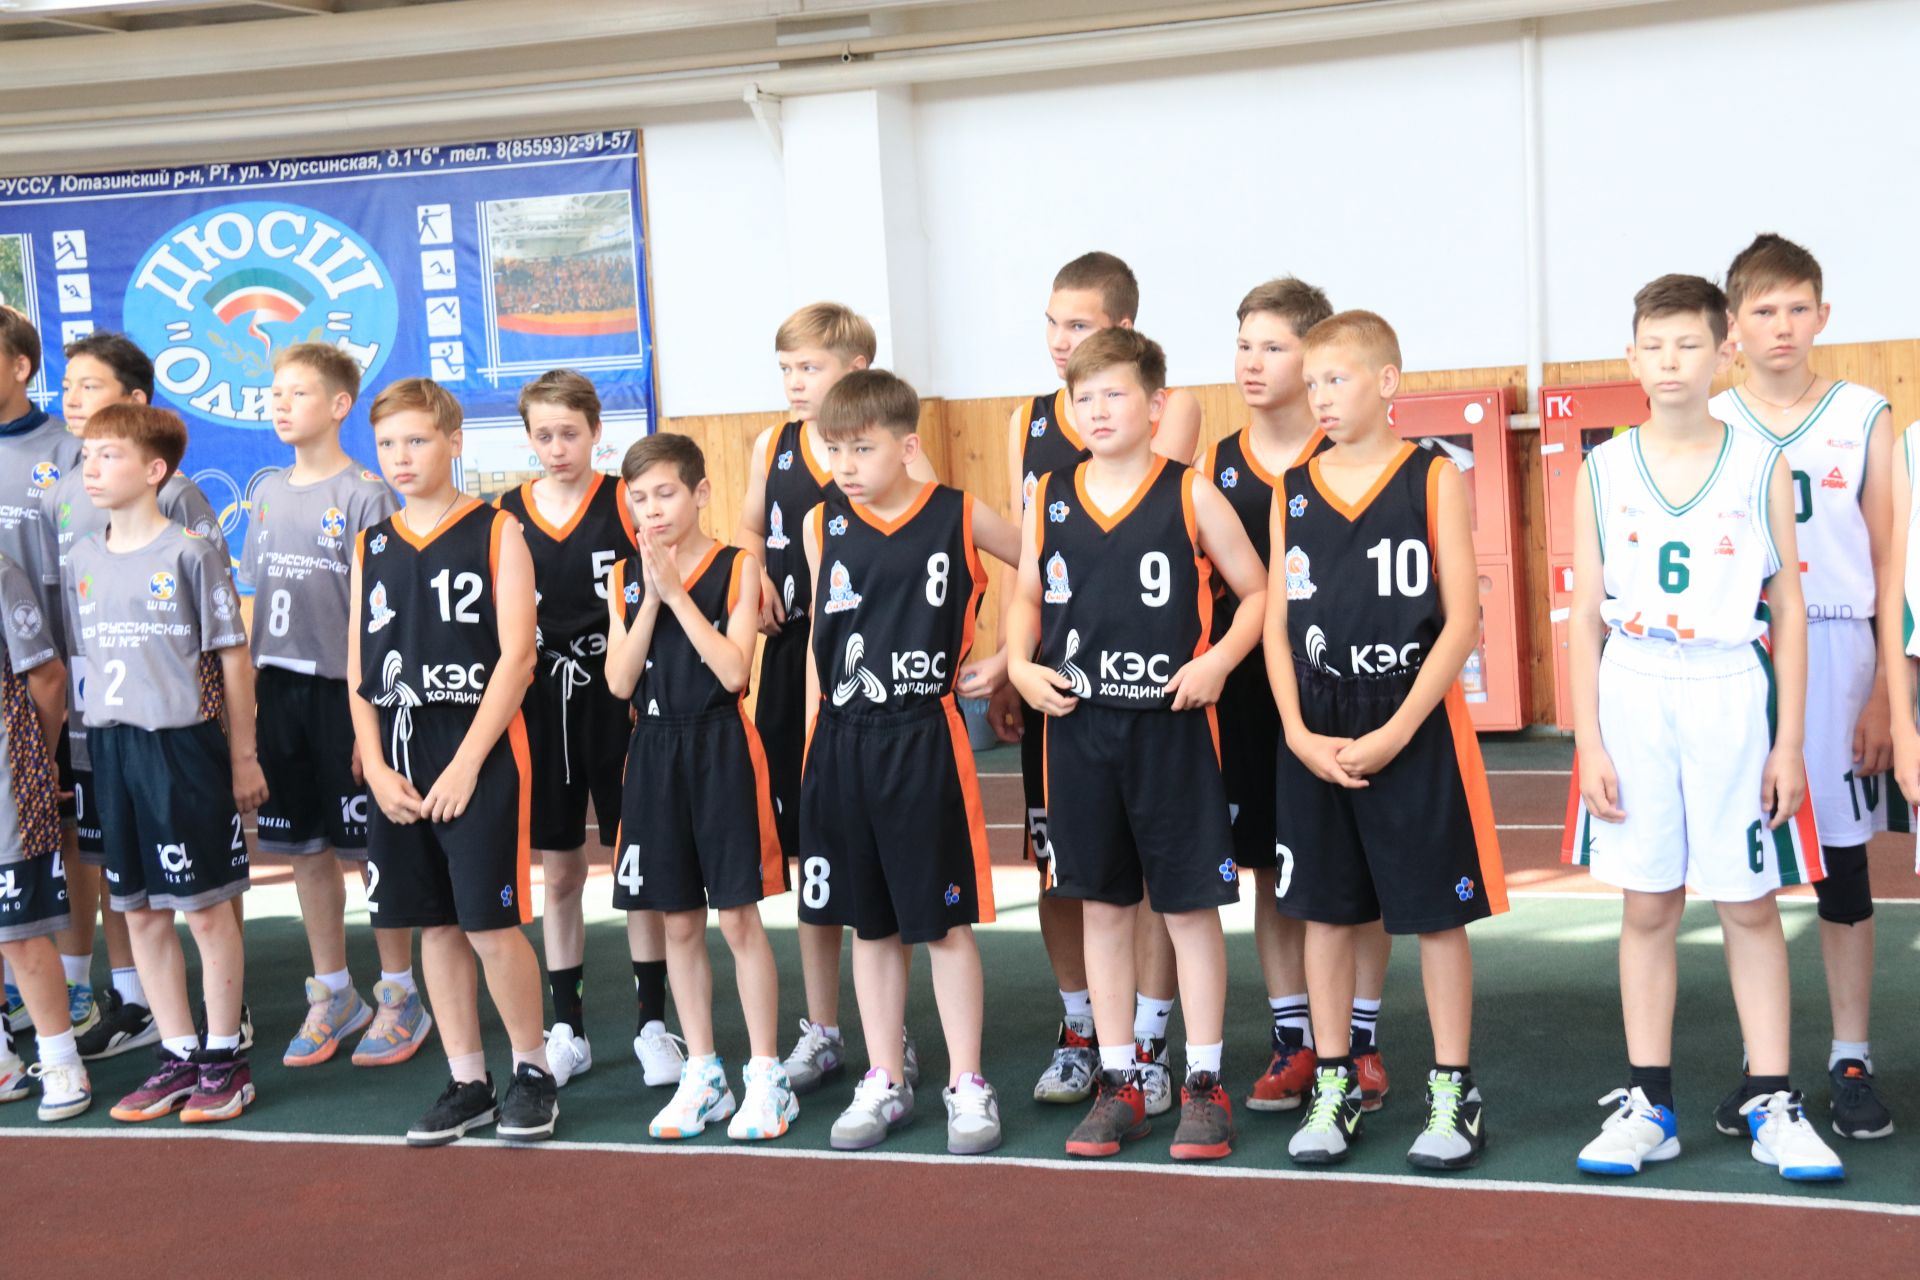 Баскетбольный турнир, посвященный памяти Павла Горбунова прошел в СОК «Олимп»